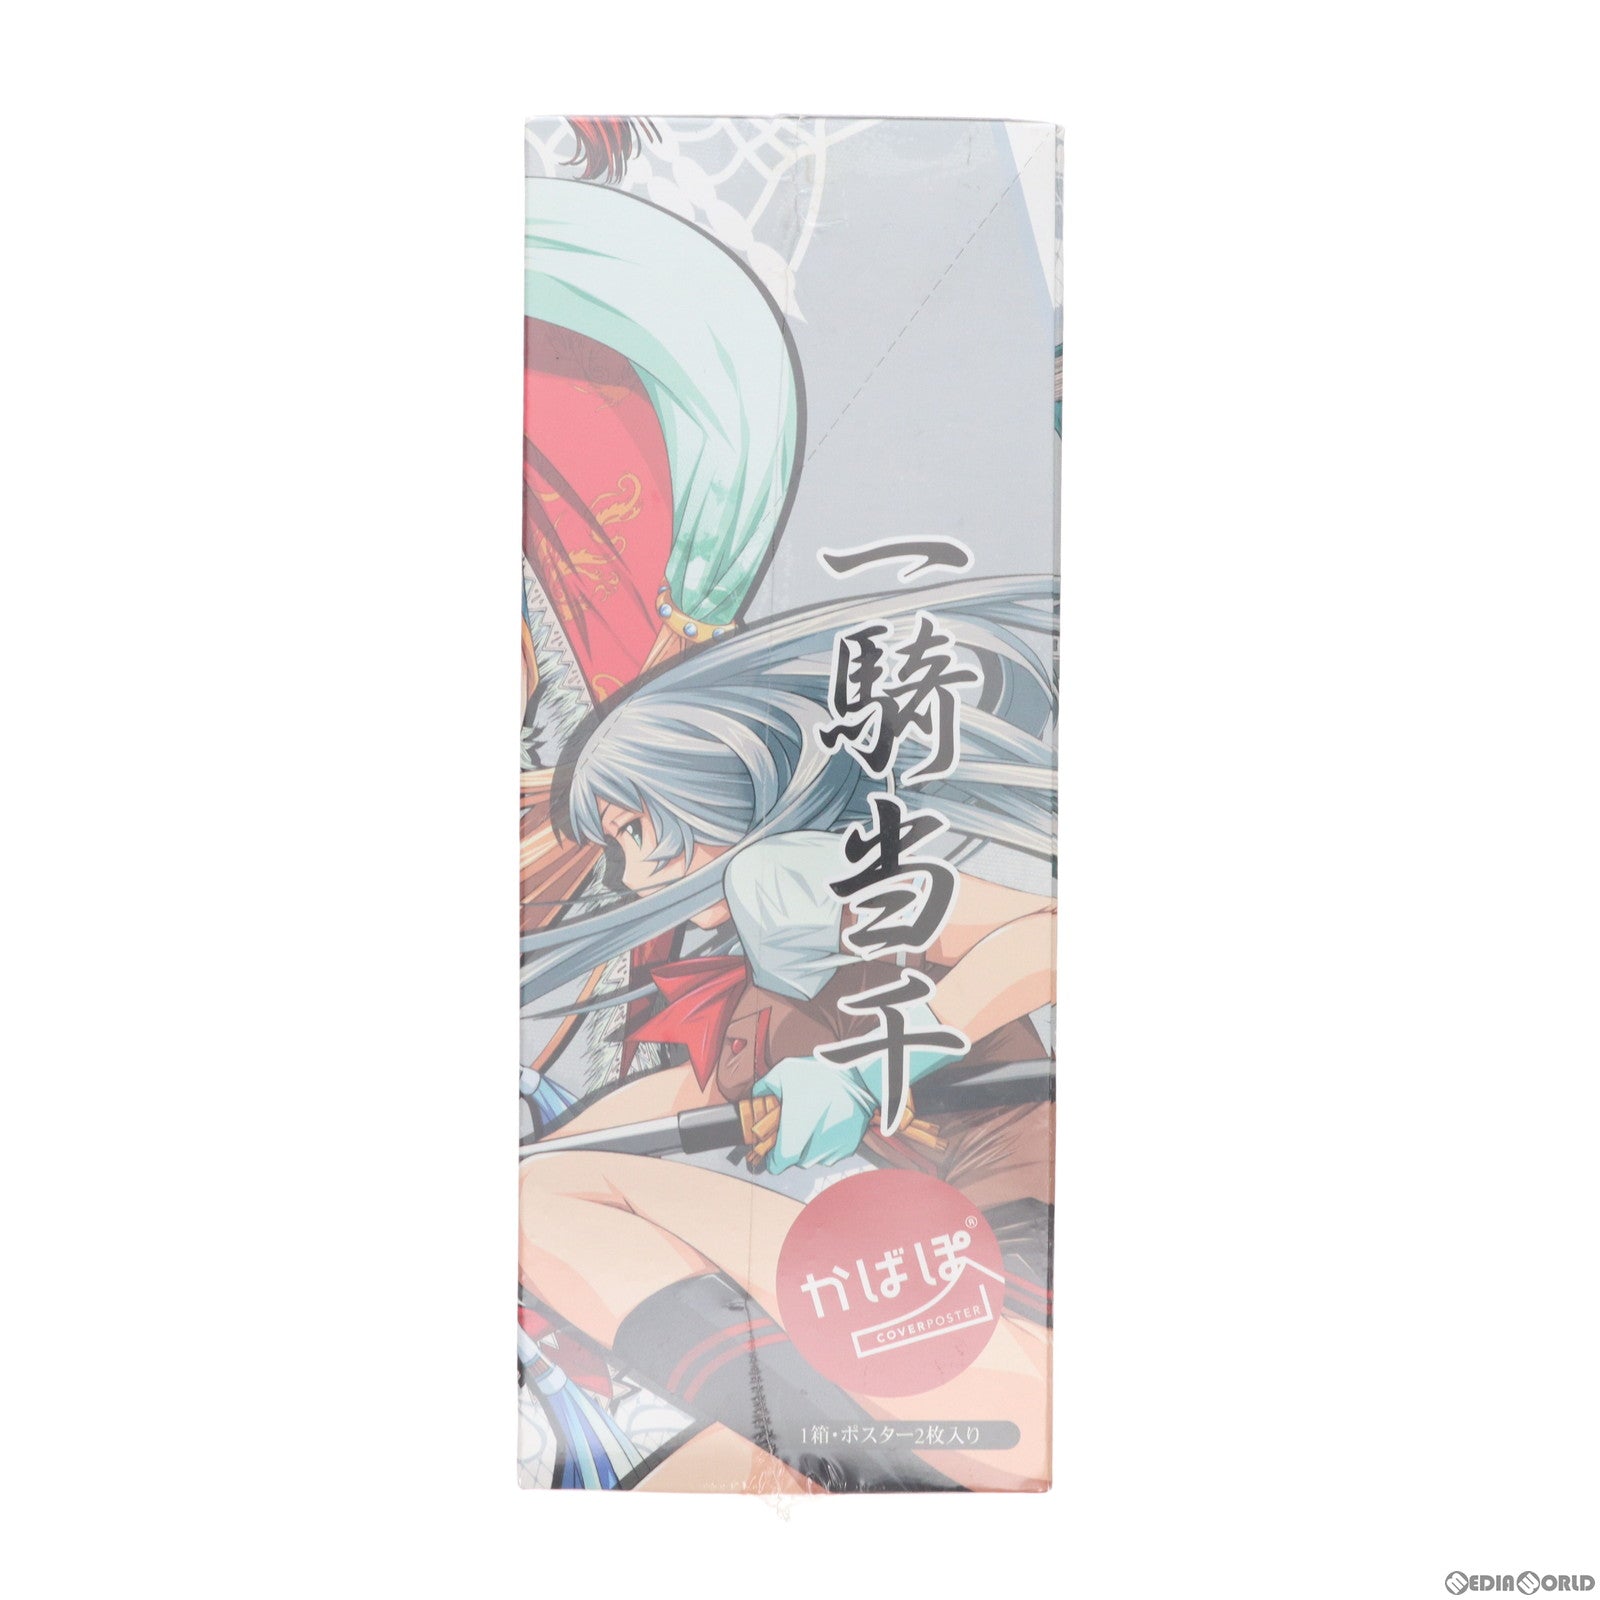 【中古即納】[BOX][GDS]一騎当千 ブックカバー・コレクション かばぽ(カバーポスター)(8個) アトリエ彩/ムービック(20090116)